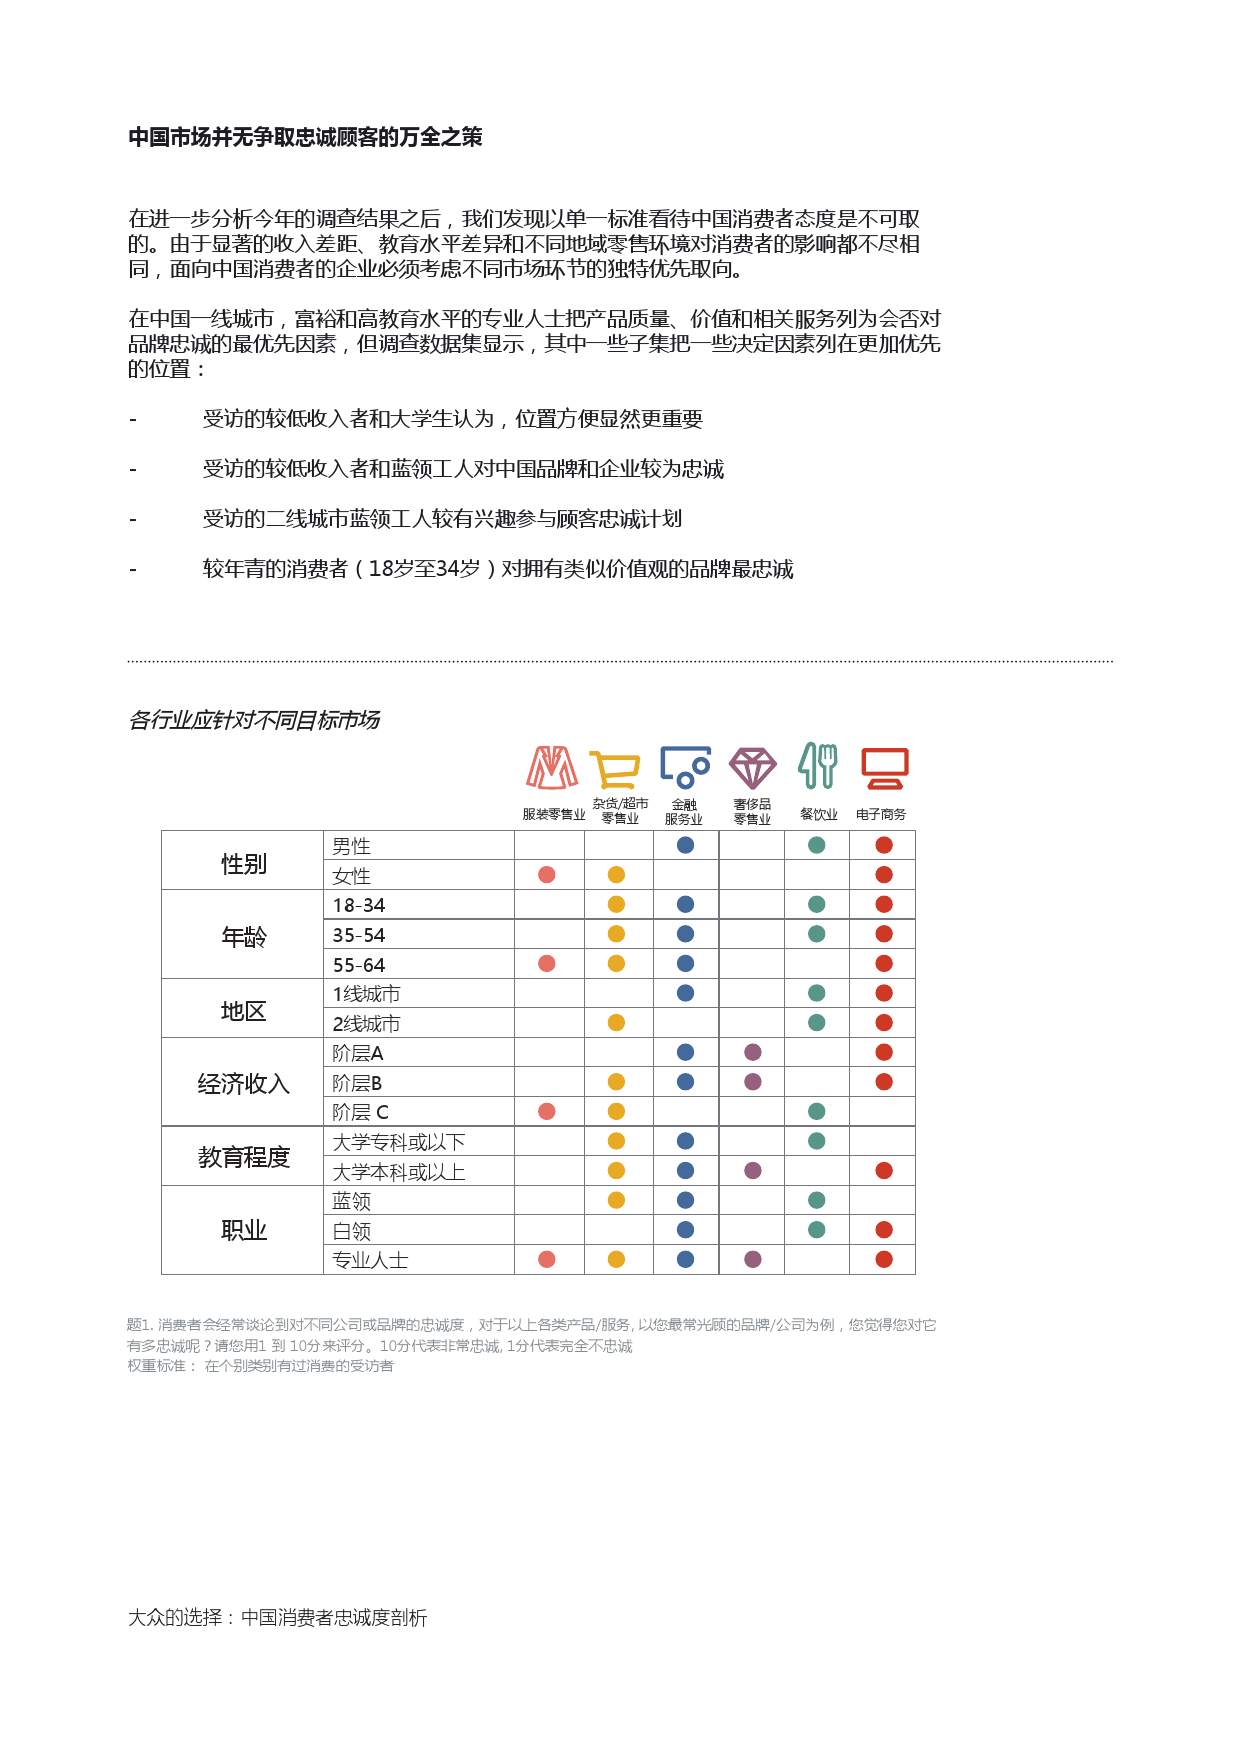 Epsilon_China_Loyalty_Study_report_CN_000012